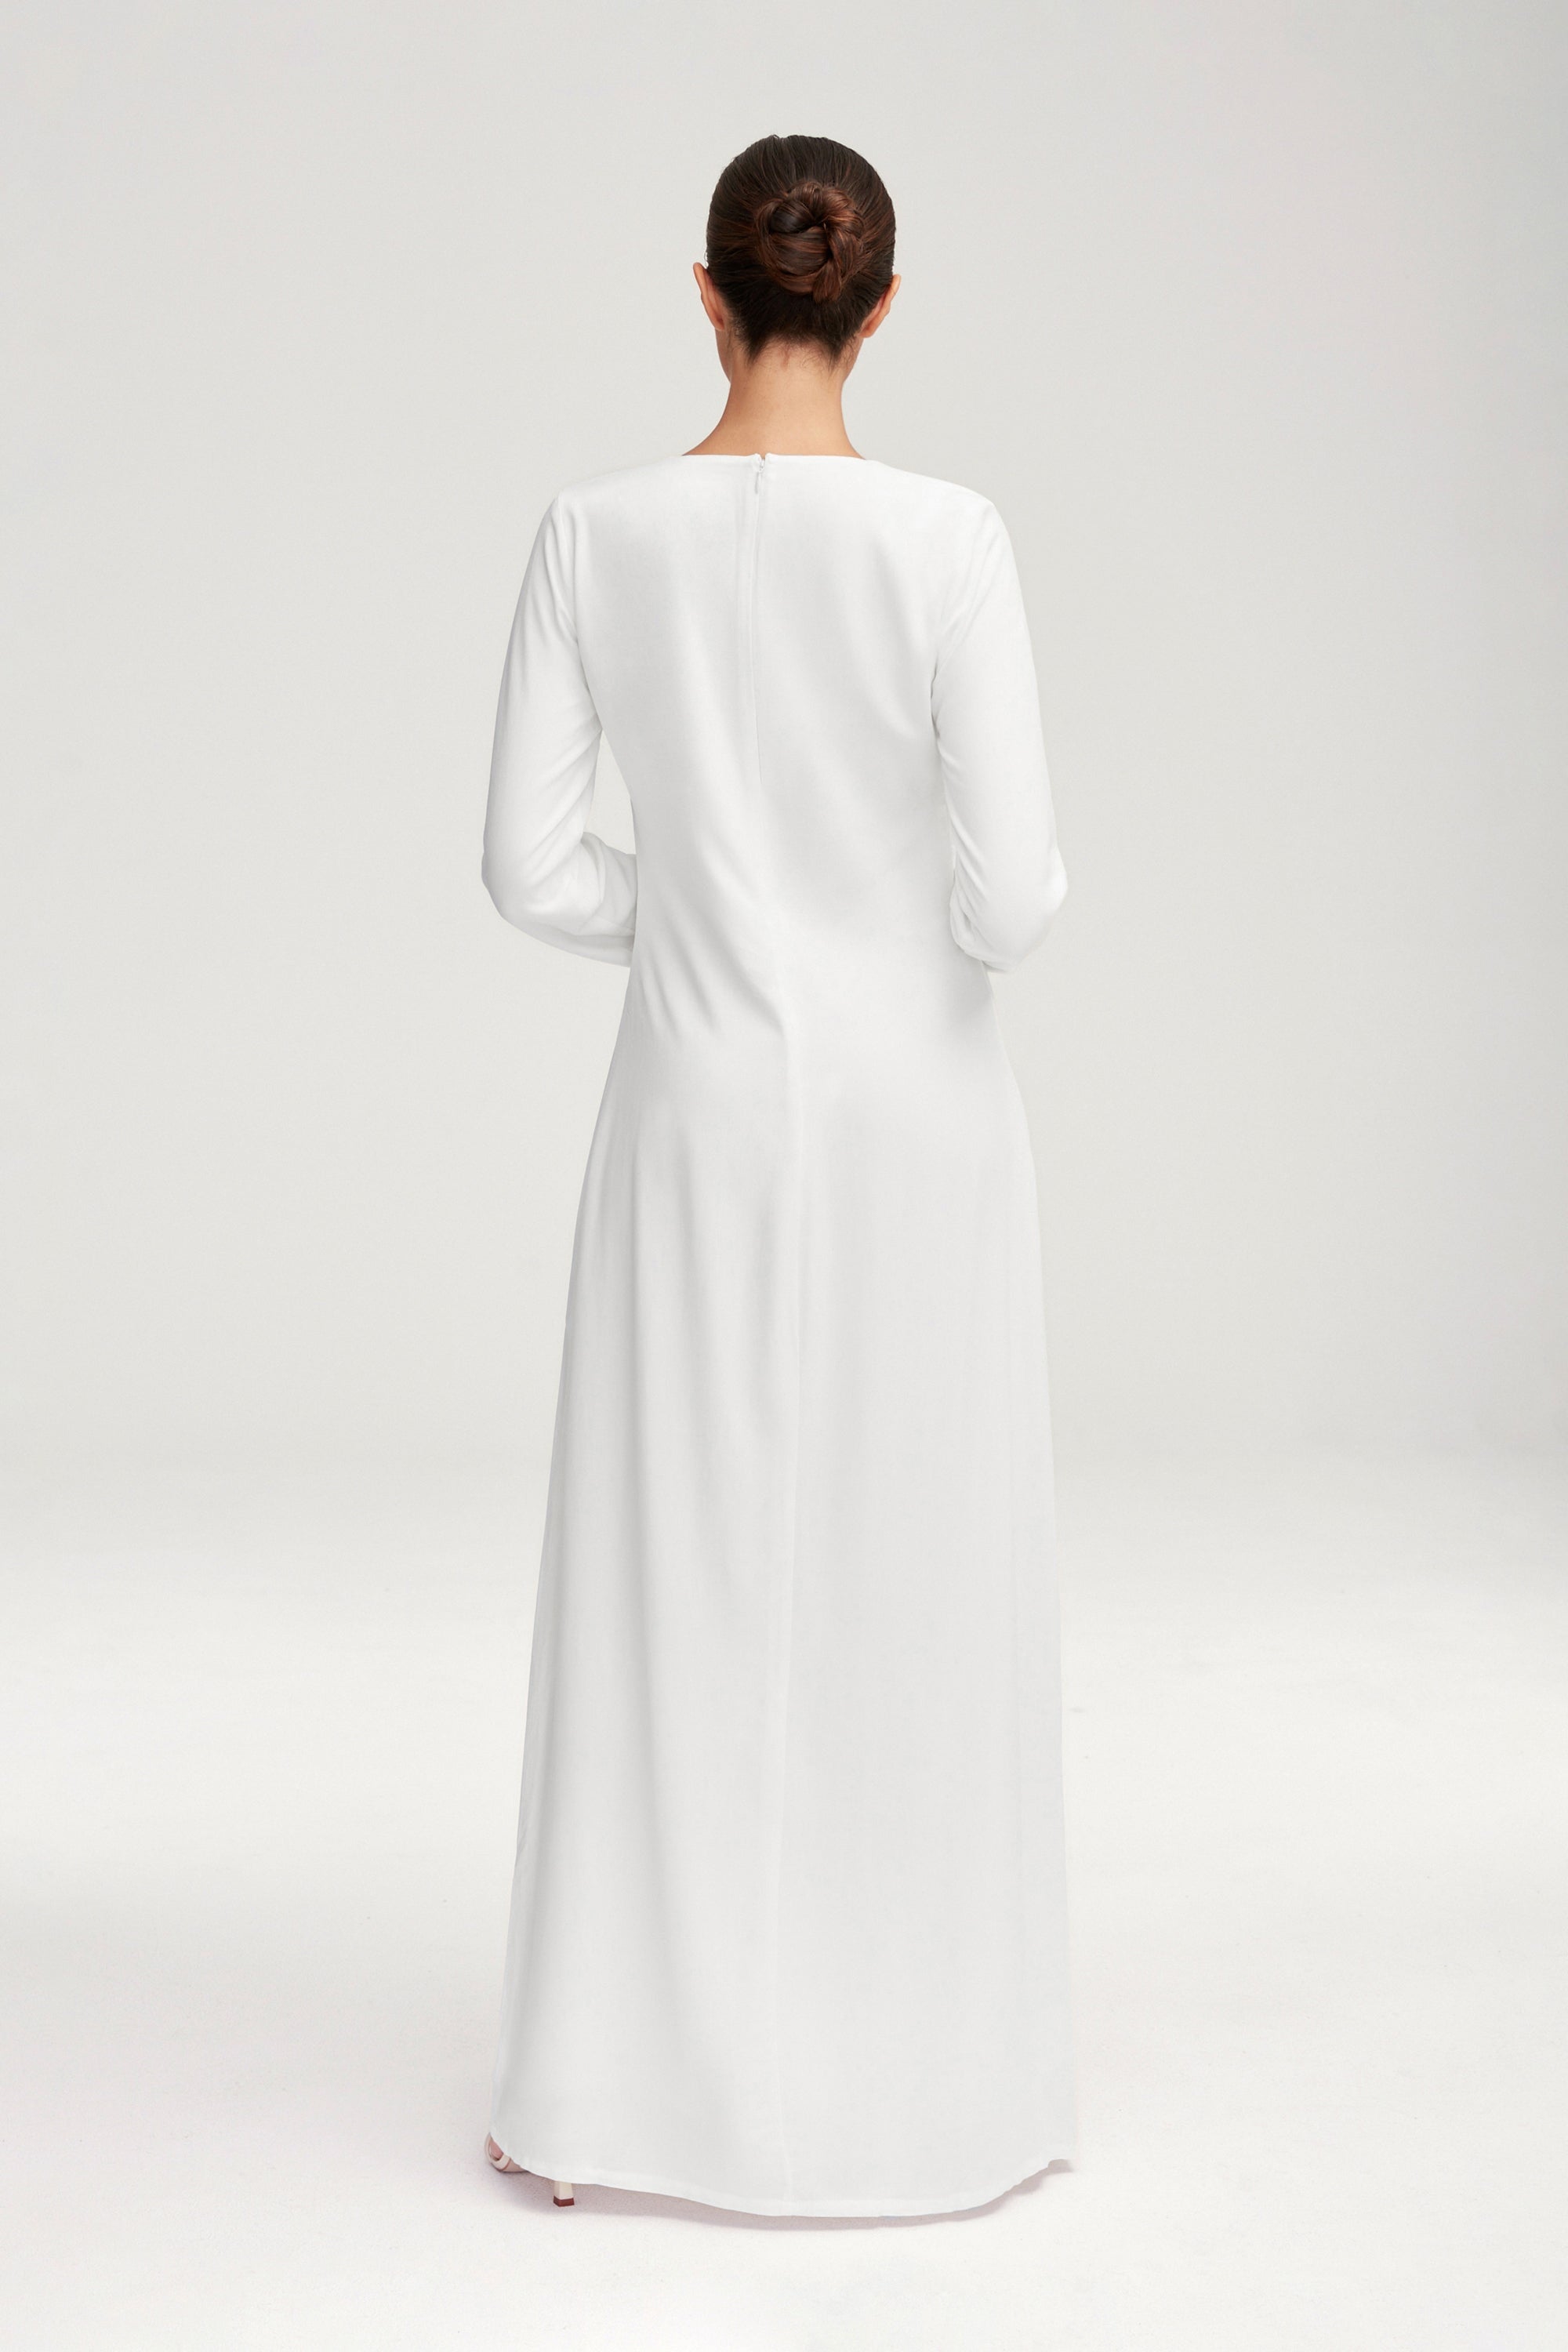 Basic Long Sleeve Maxi Dress - White Clothing Veiled 